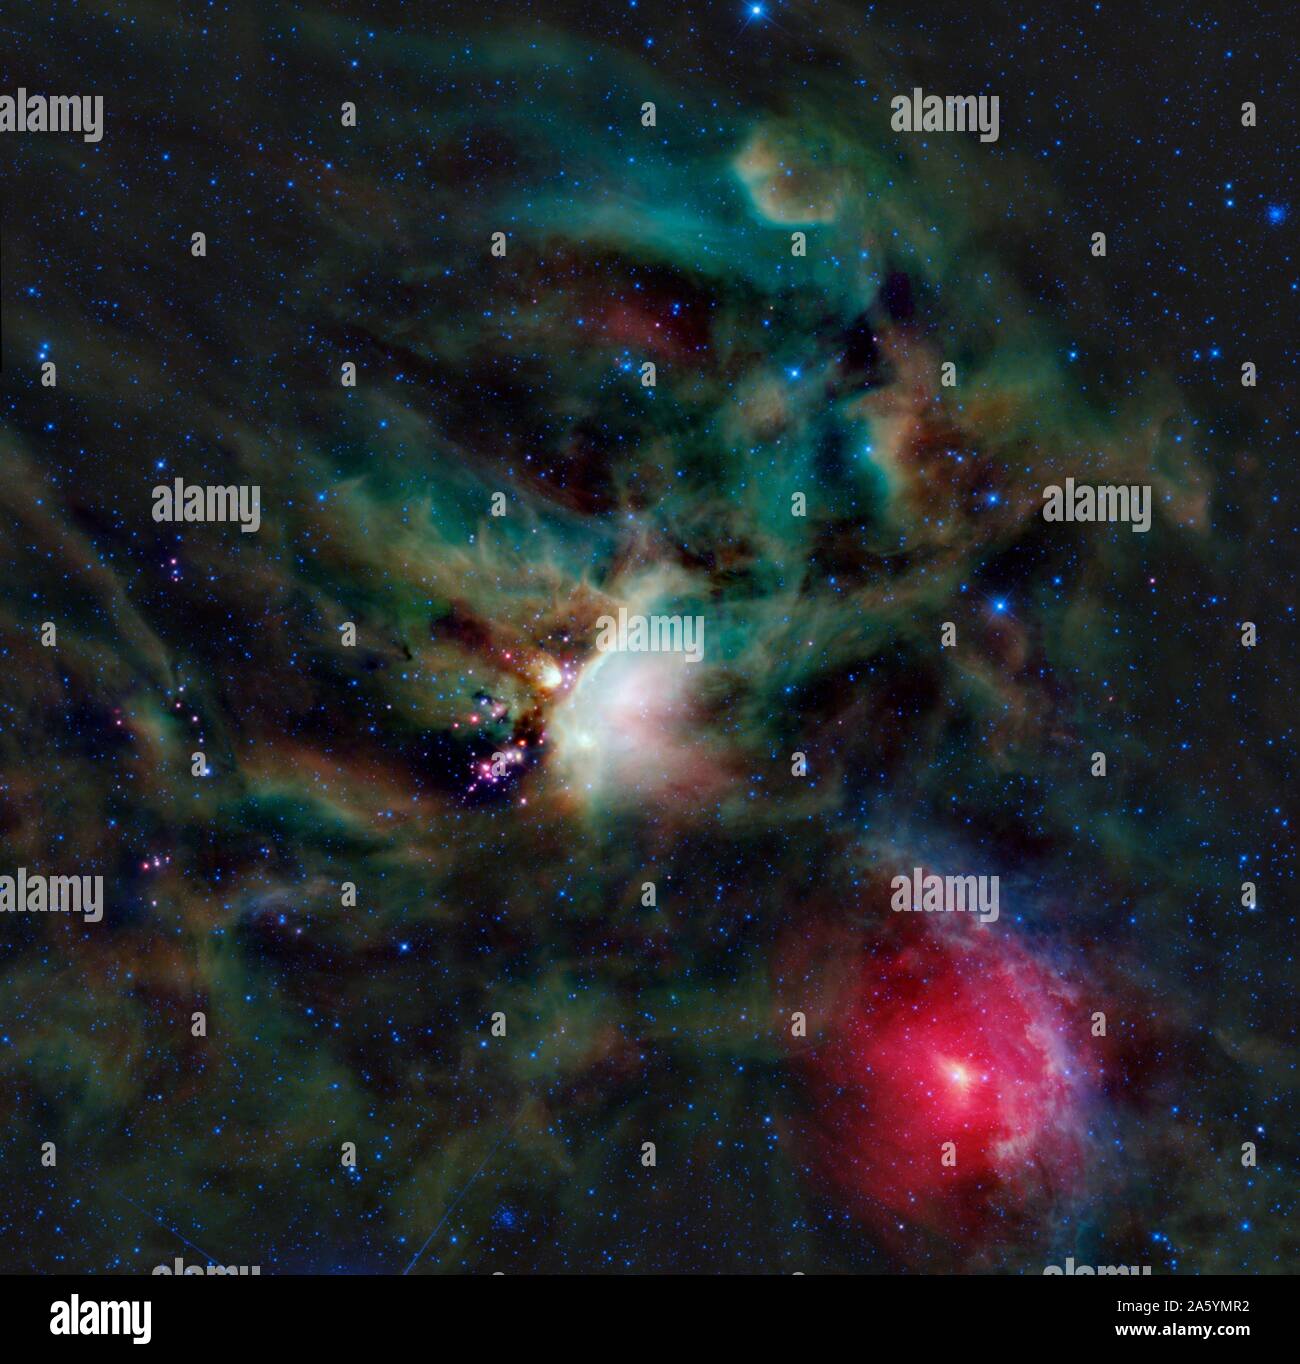 Le nuage de Rho Ophiuchi complexe de la NASA est sage. Le nuage de Rho Ophiuchi est trouvé l'augmentation au-dessus du plan de la Voie lactée dans le ciel nocturne, en bordure de l'Ophiuchus constellations et Scorpius. C'est l'une des régions d'étoiles en formation le plus proche de la Terre. Banque D'Images